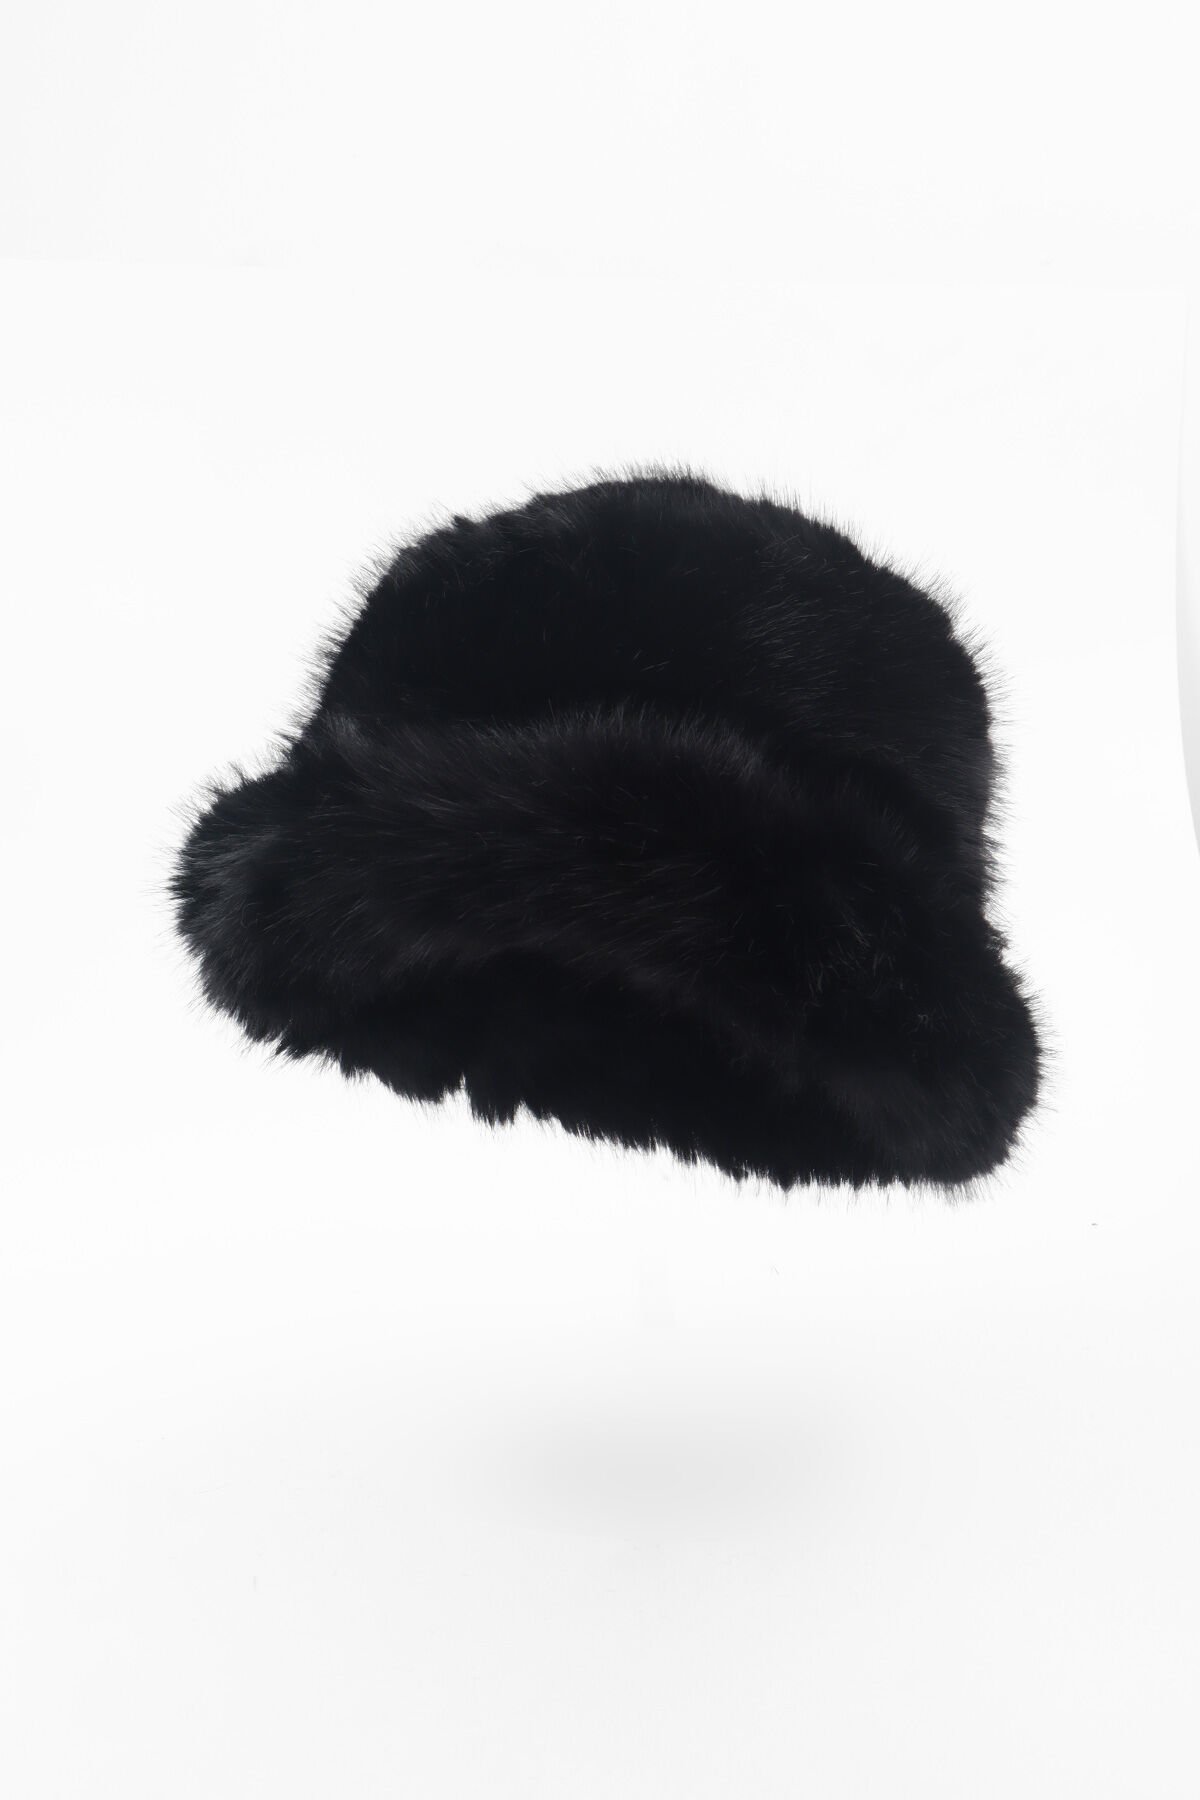 Siyah Kürk Yuvarlak Şapka Peluş Bucket Şapka